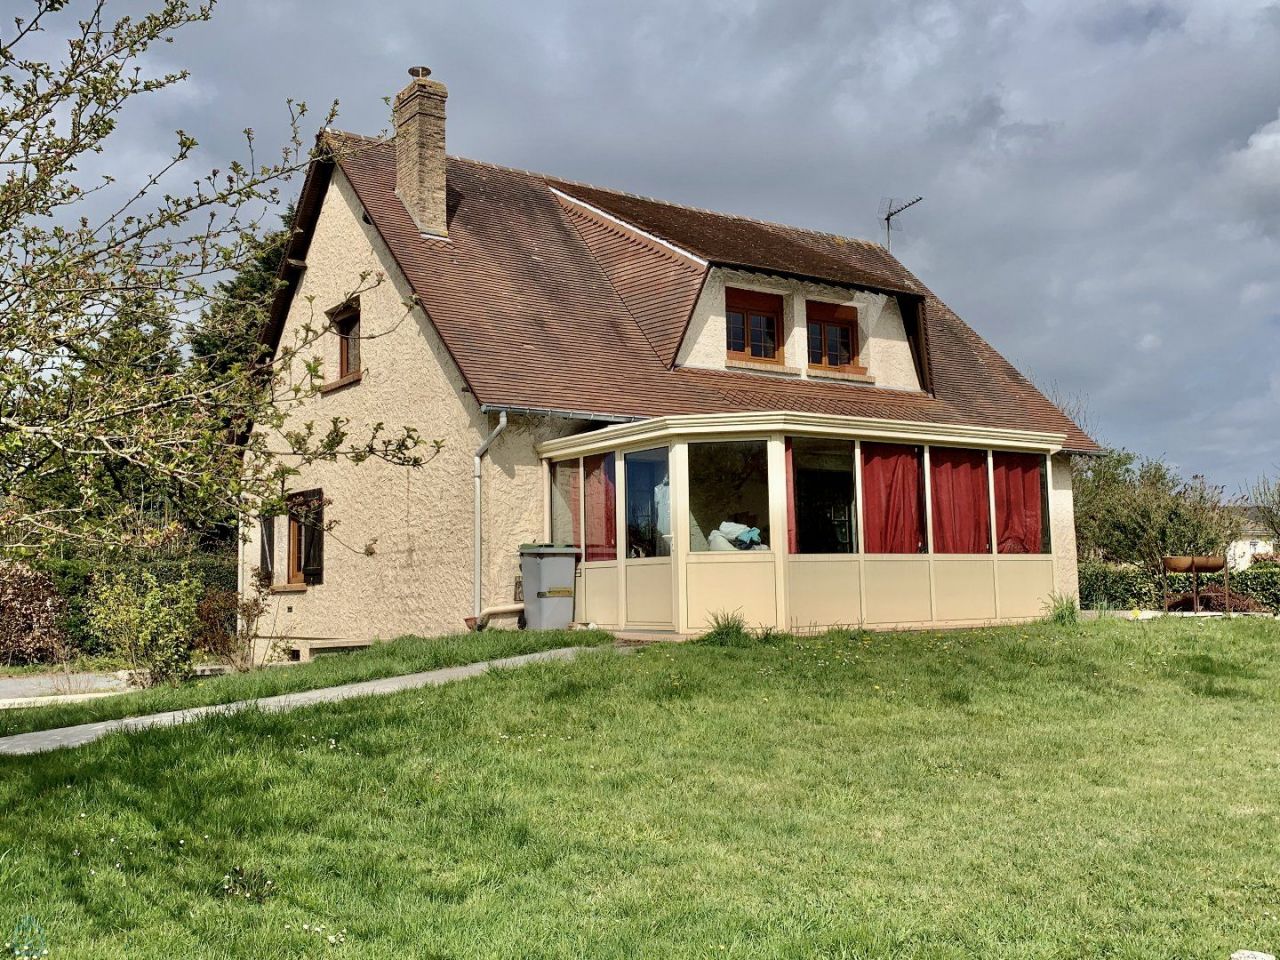 Maison en Normandie, France - image 1